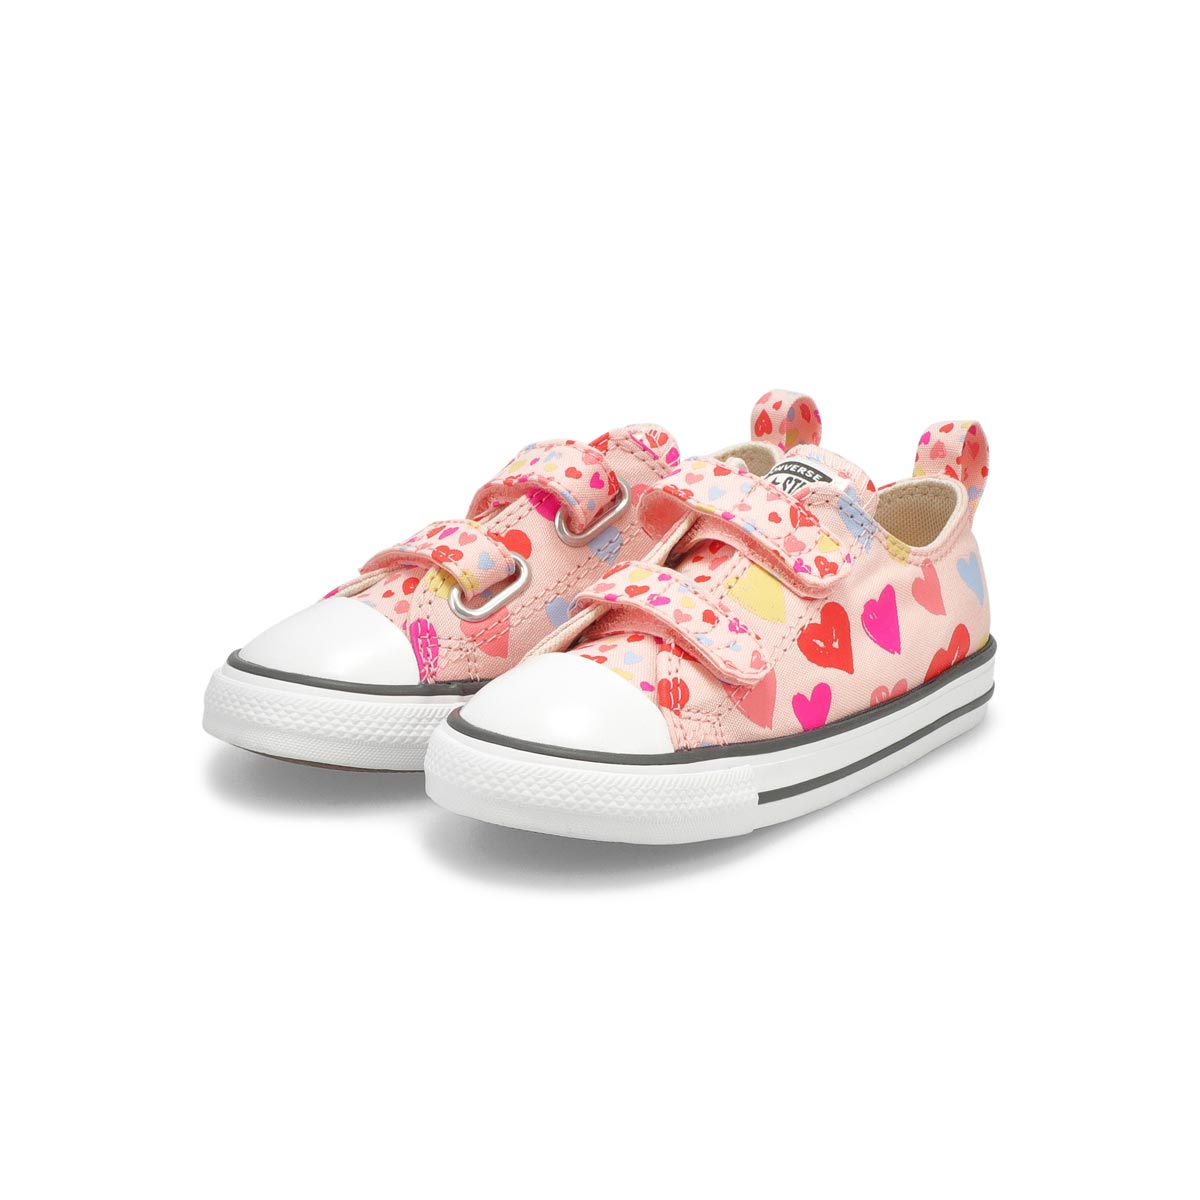 Infants' All Star 2V Heart Print Sneaker -Pink